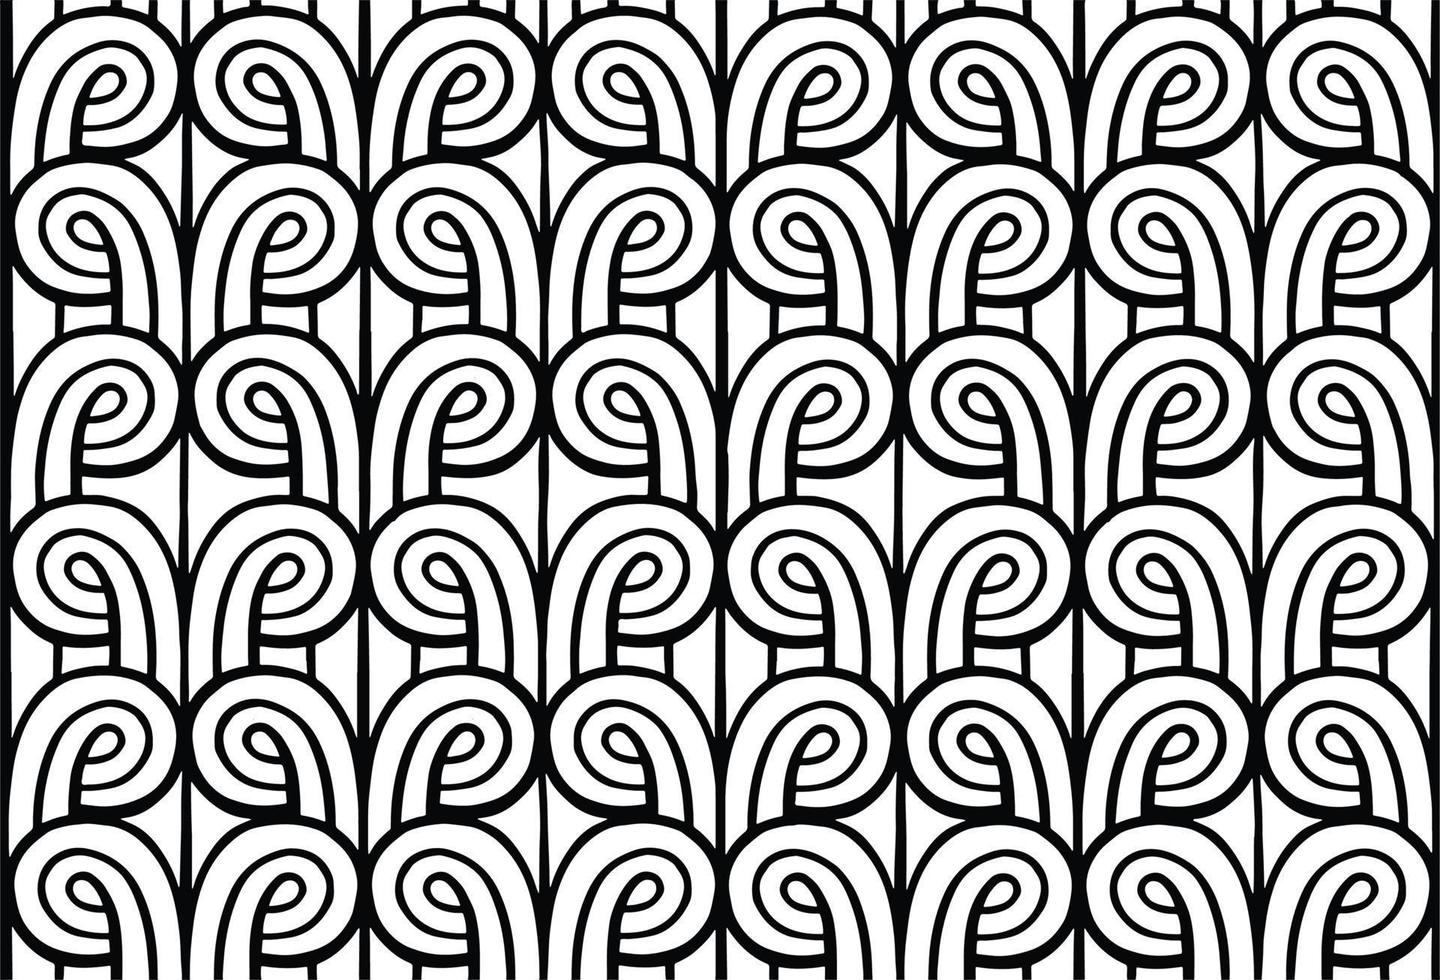 zwart en wit ritmisch naadloos patroon ornament textiel vector